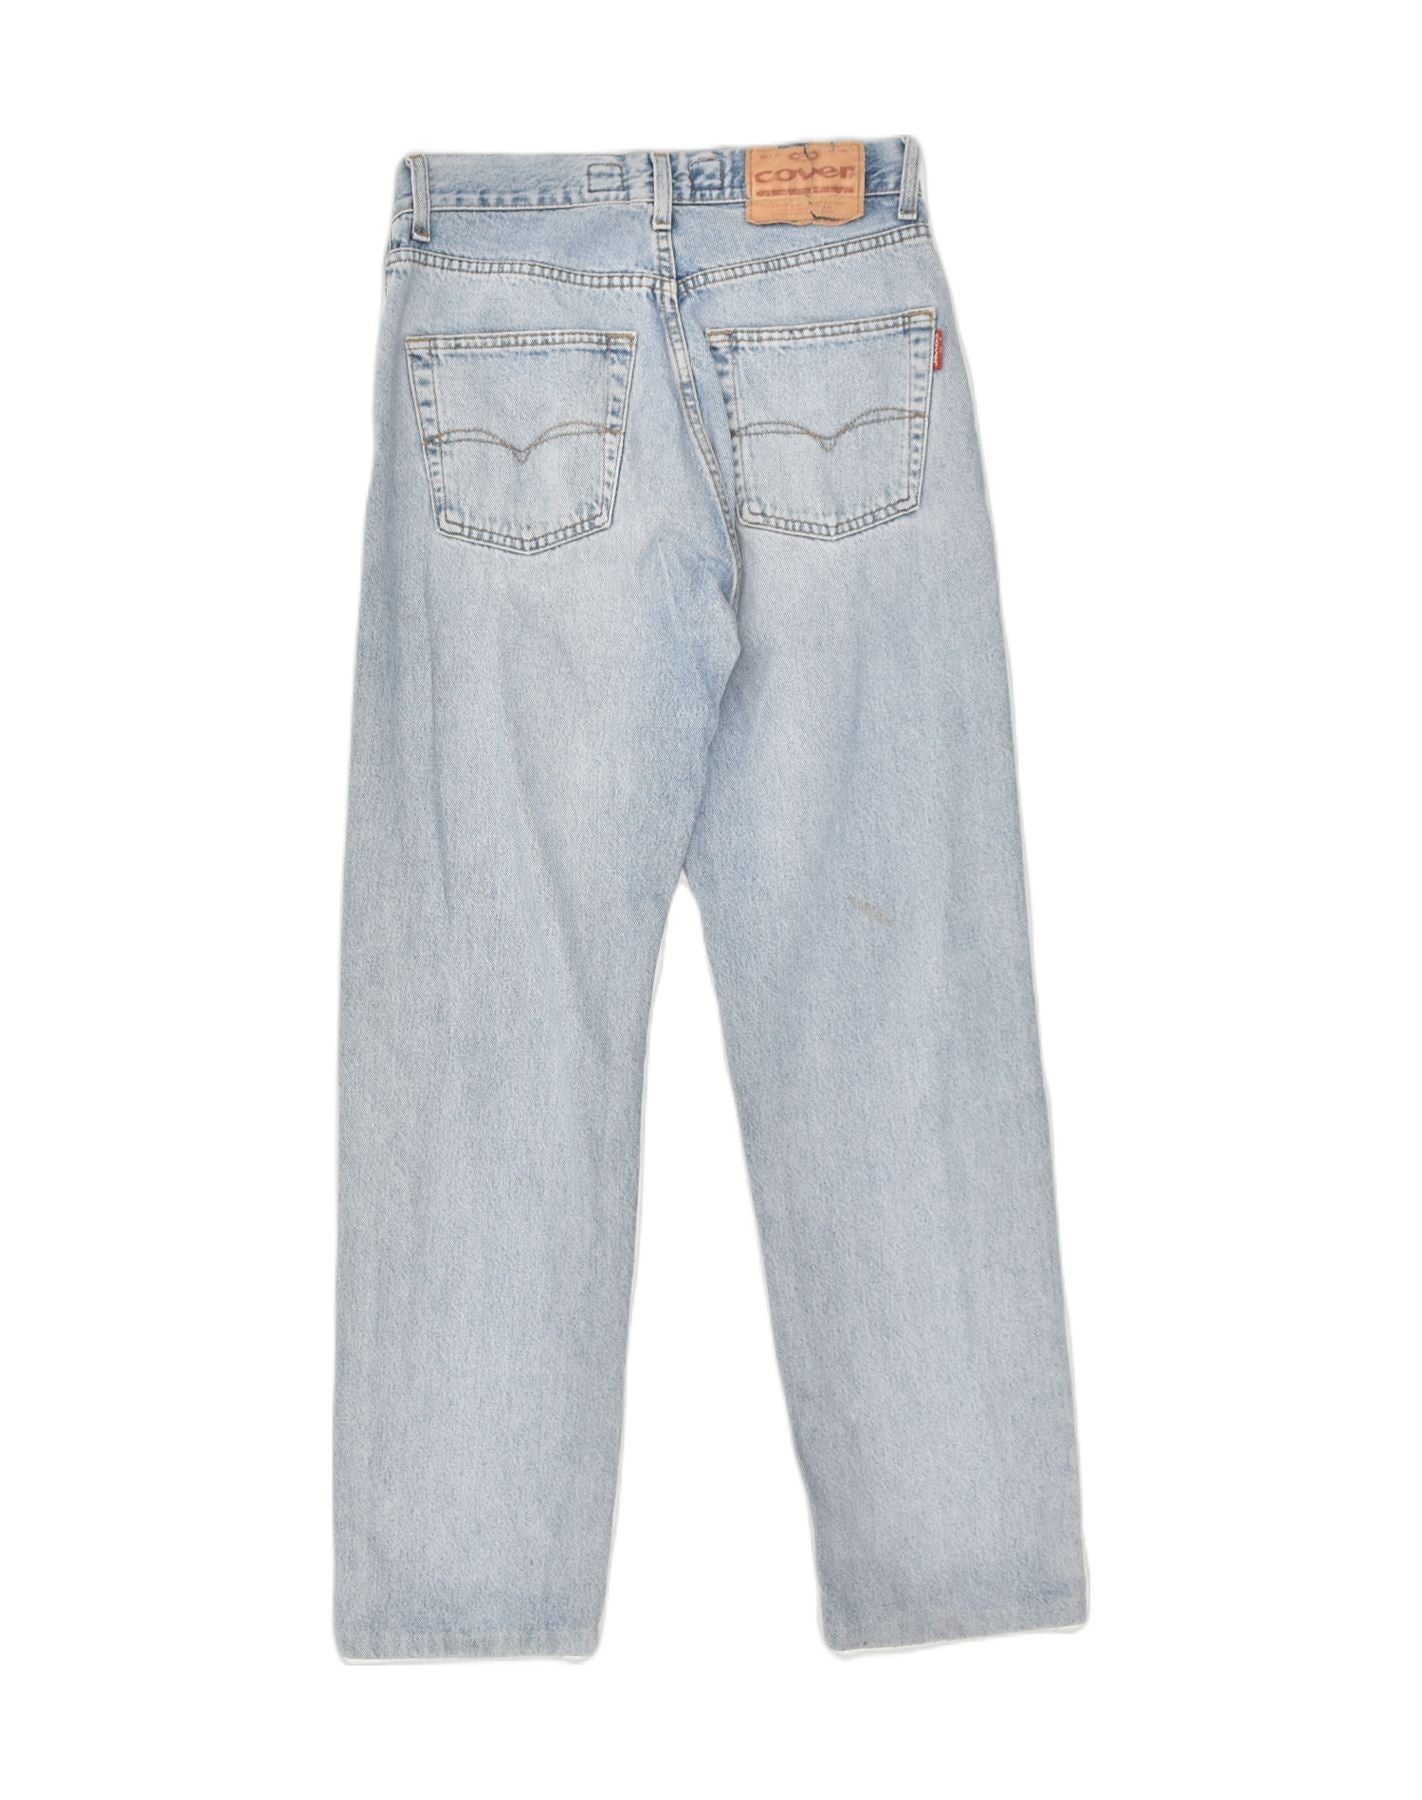 DaCovet Light Grey Jeans – DaCovet Denims